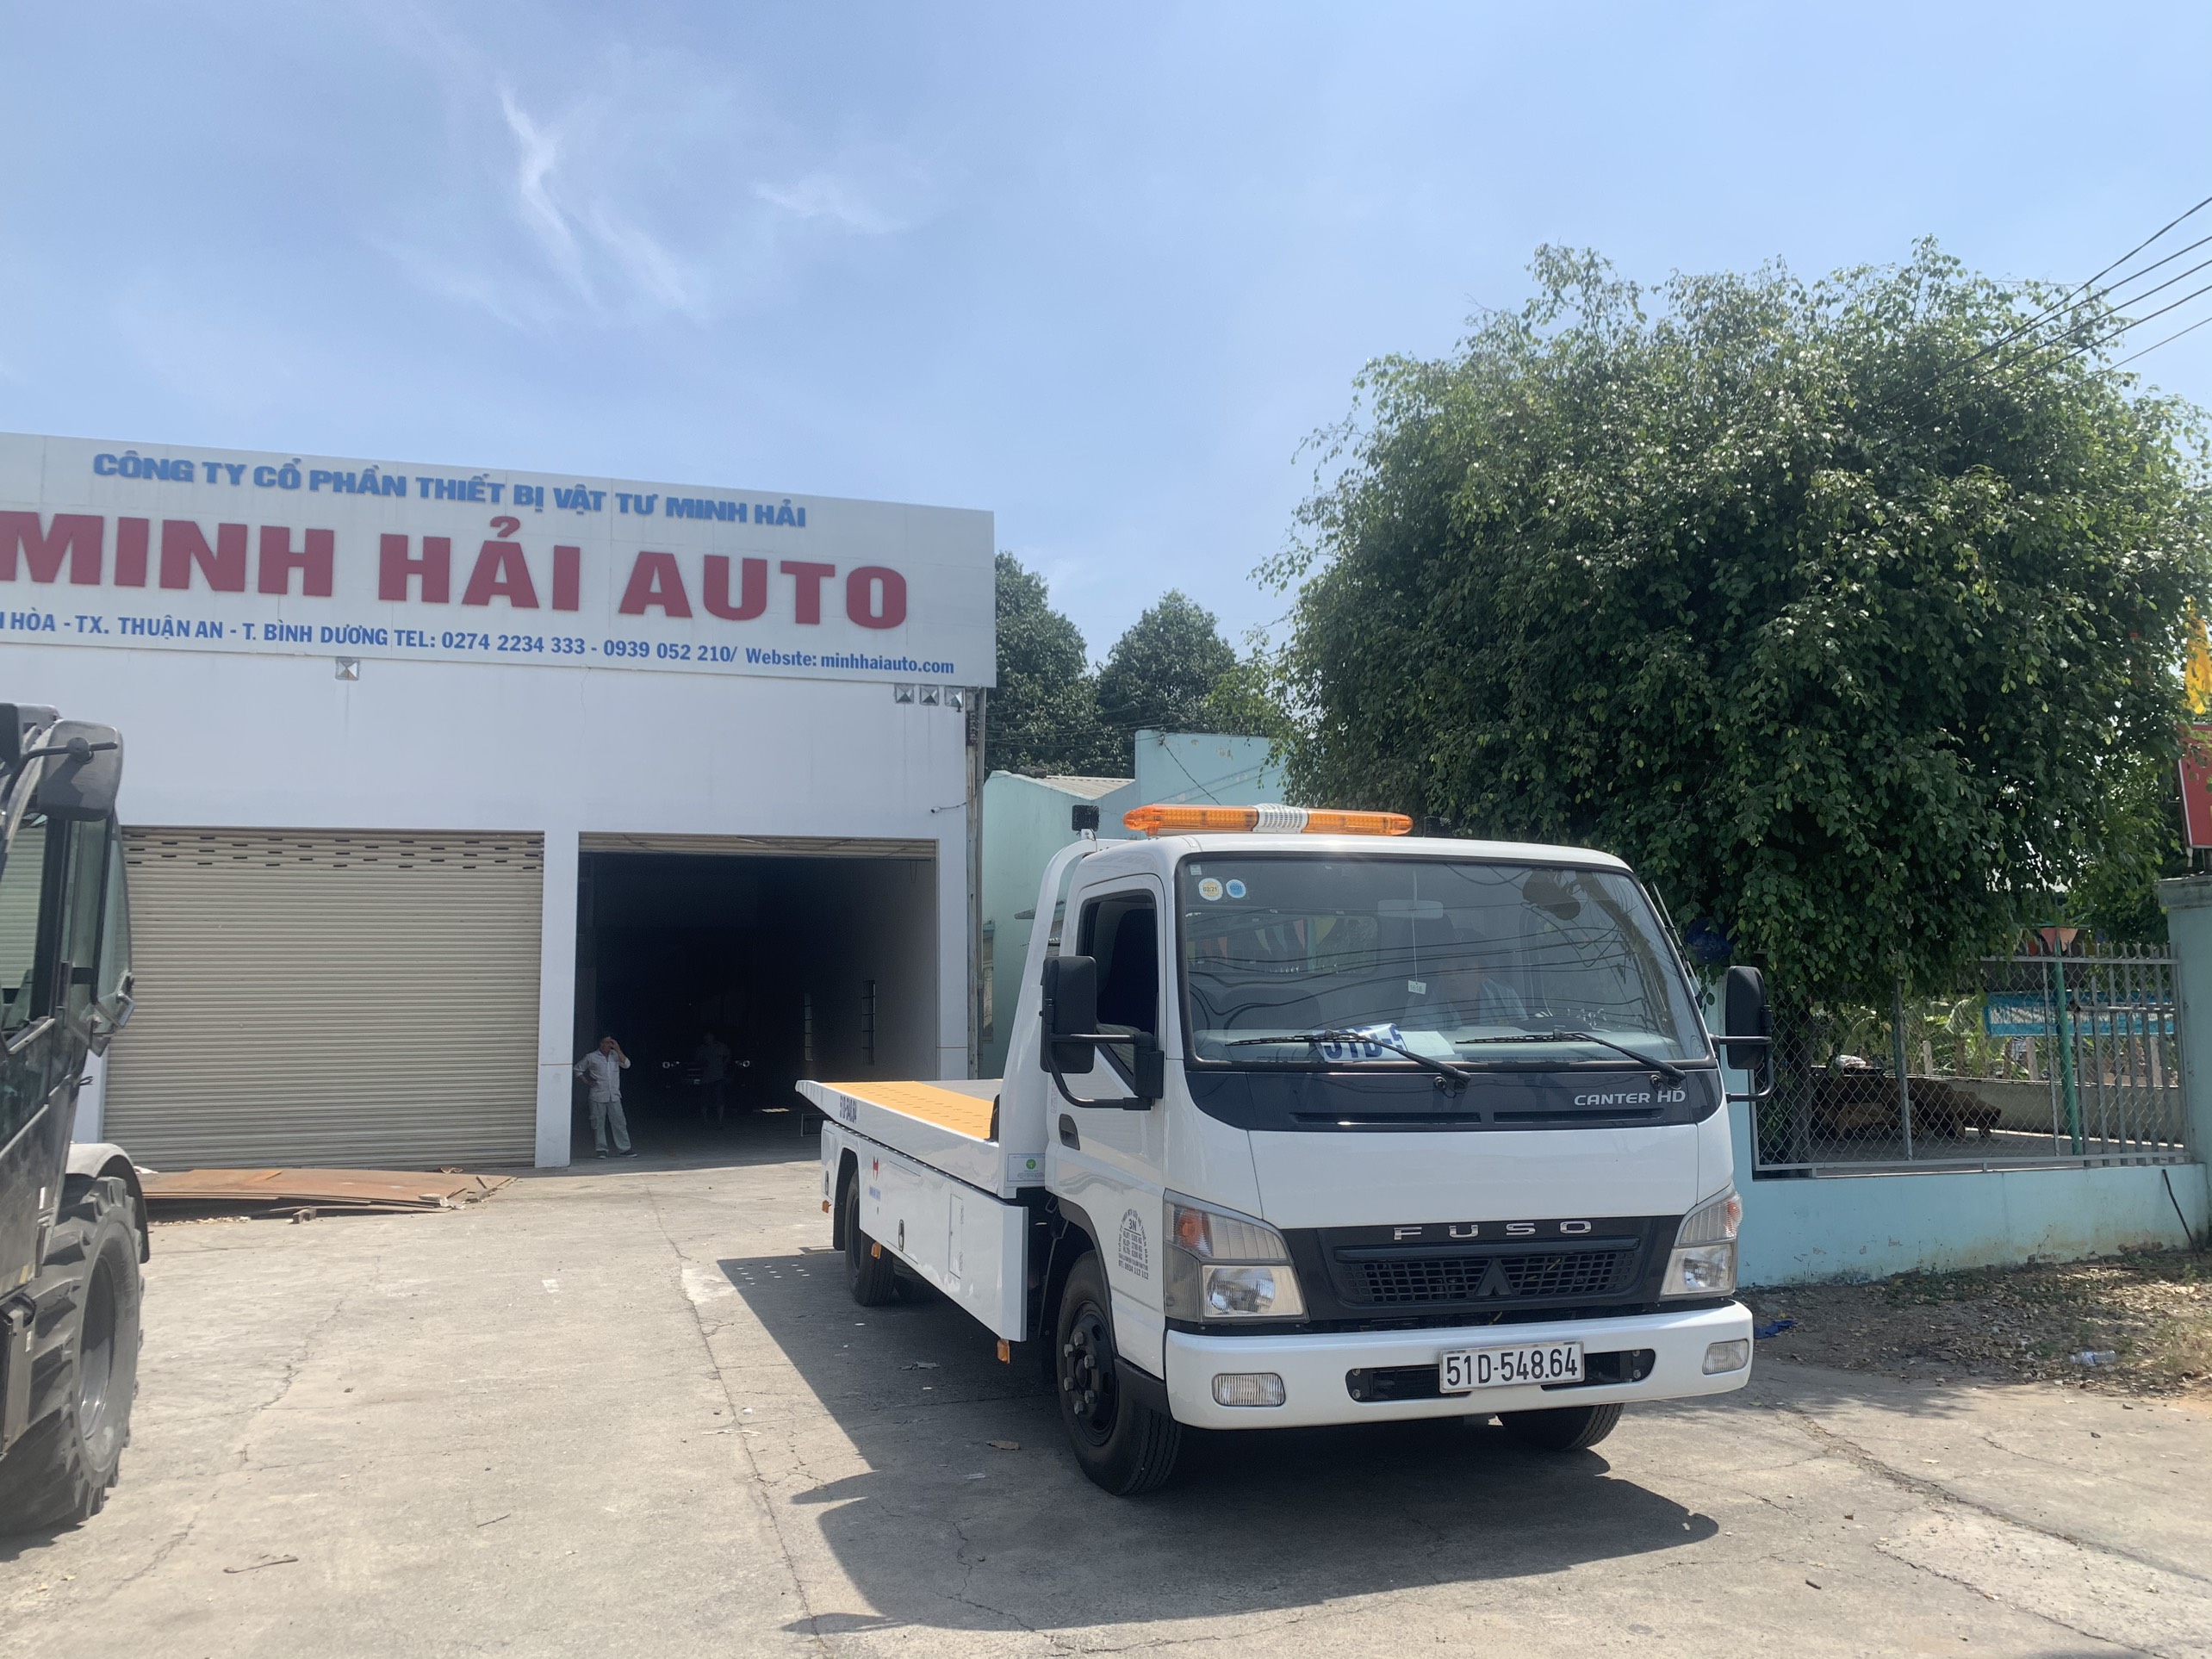 Smoothy hydraulic cotrol of MINH HAI tow trucks